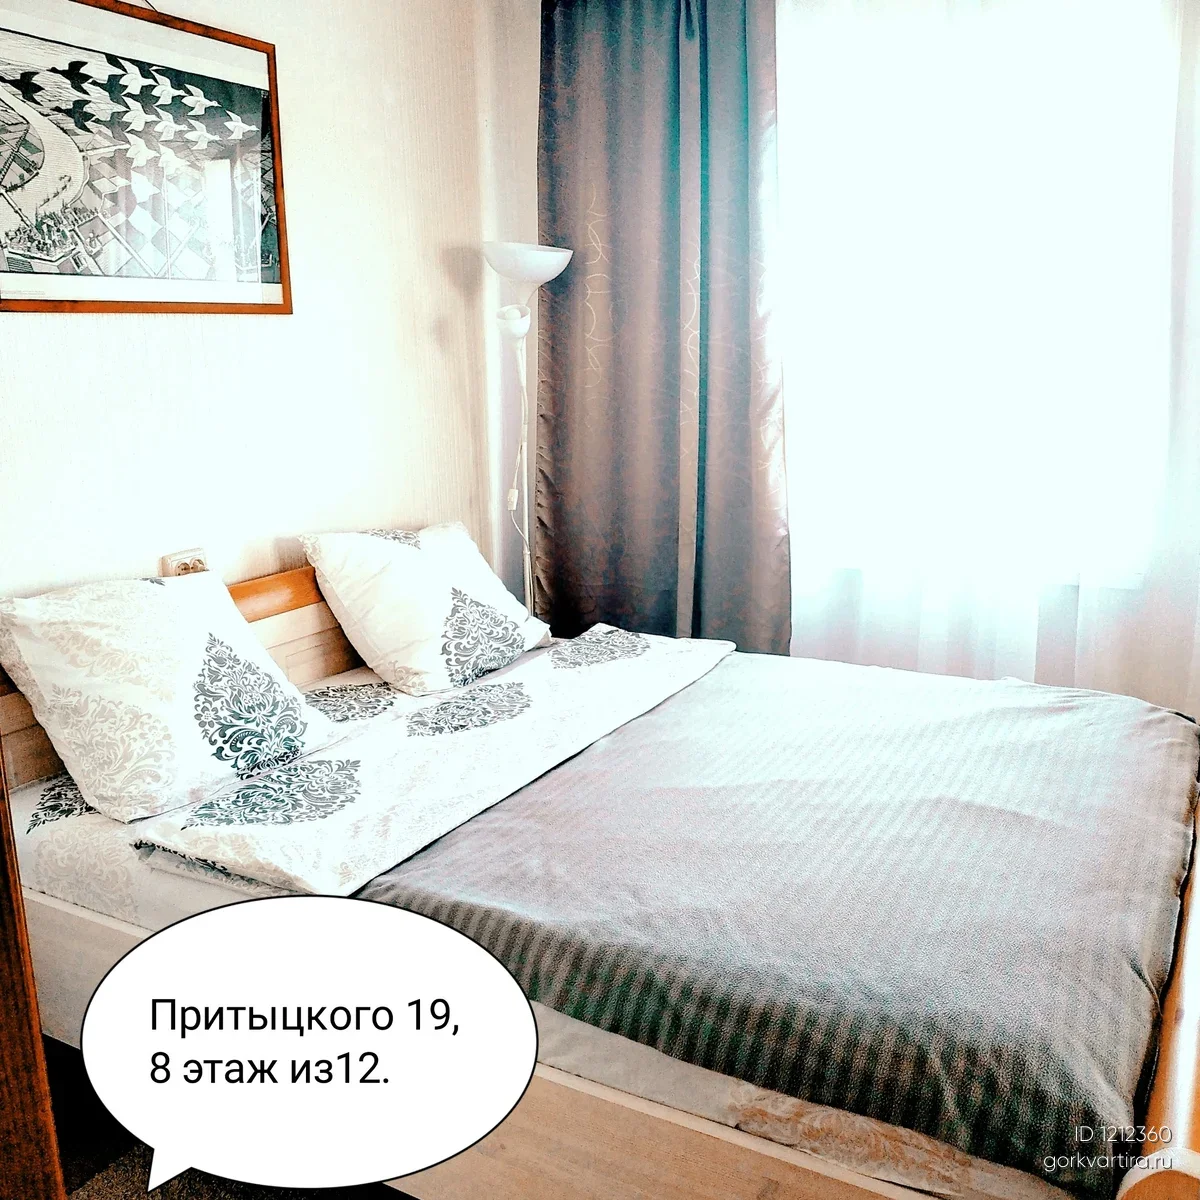 Квартира Притыцкого 19